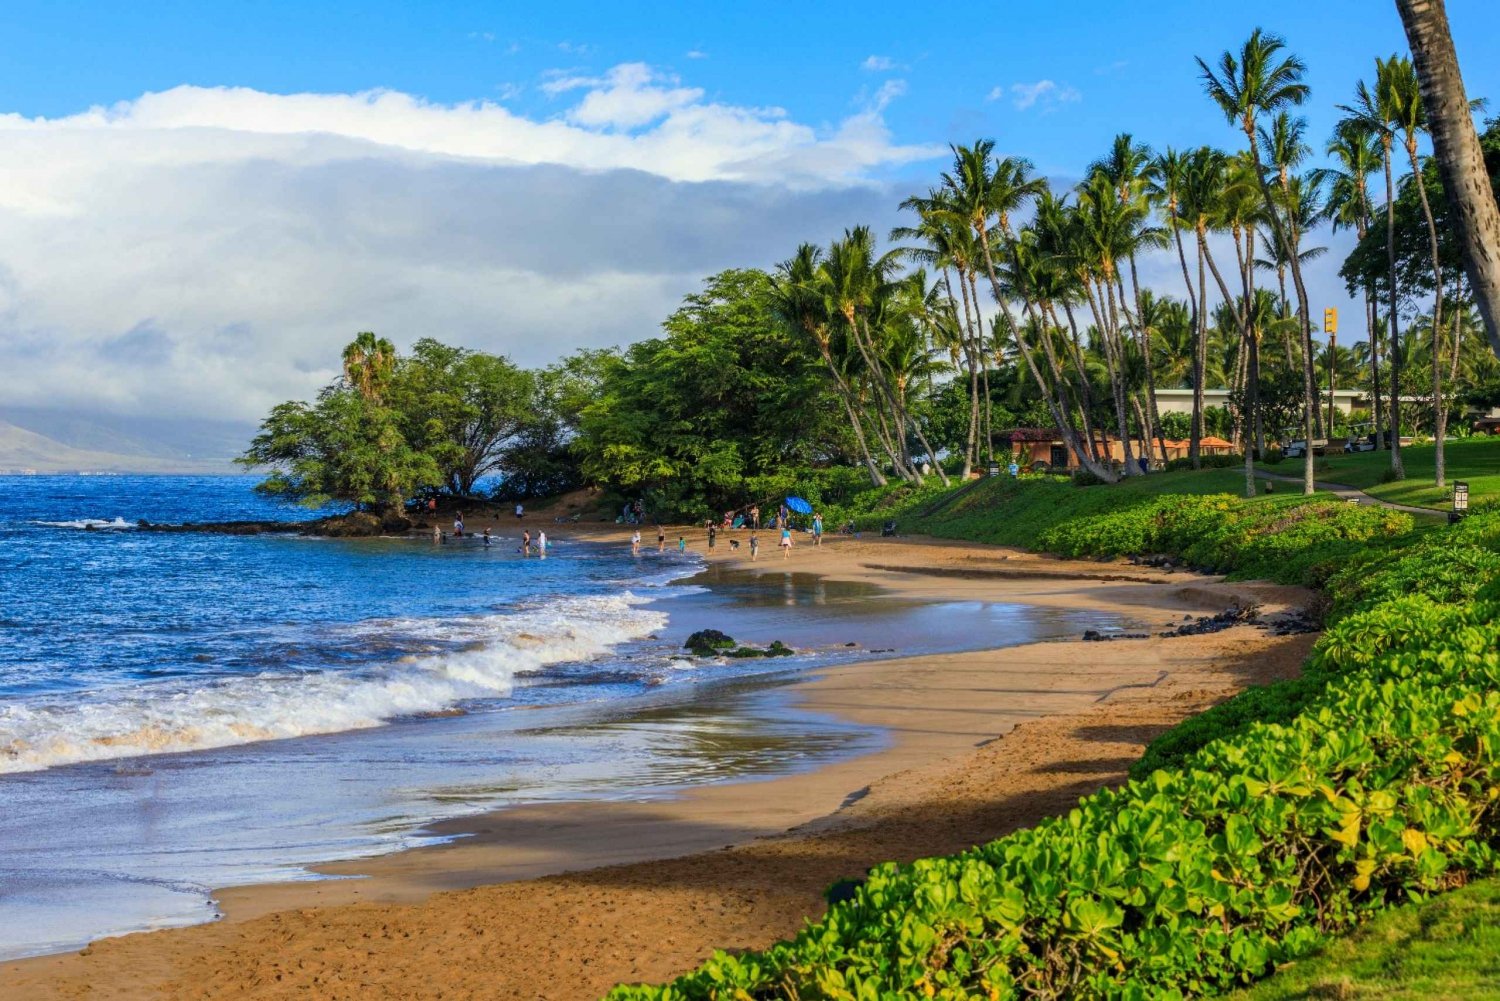 South Maui: Selvguidet køretur til strandparker